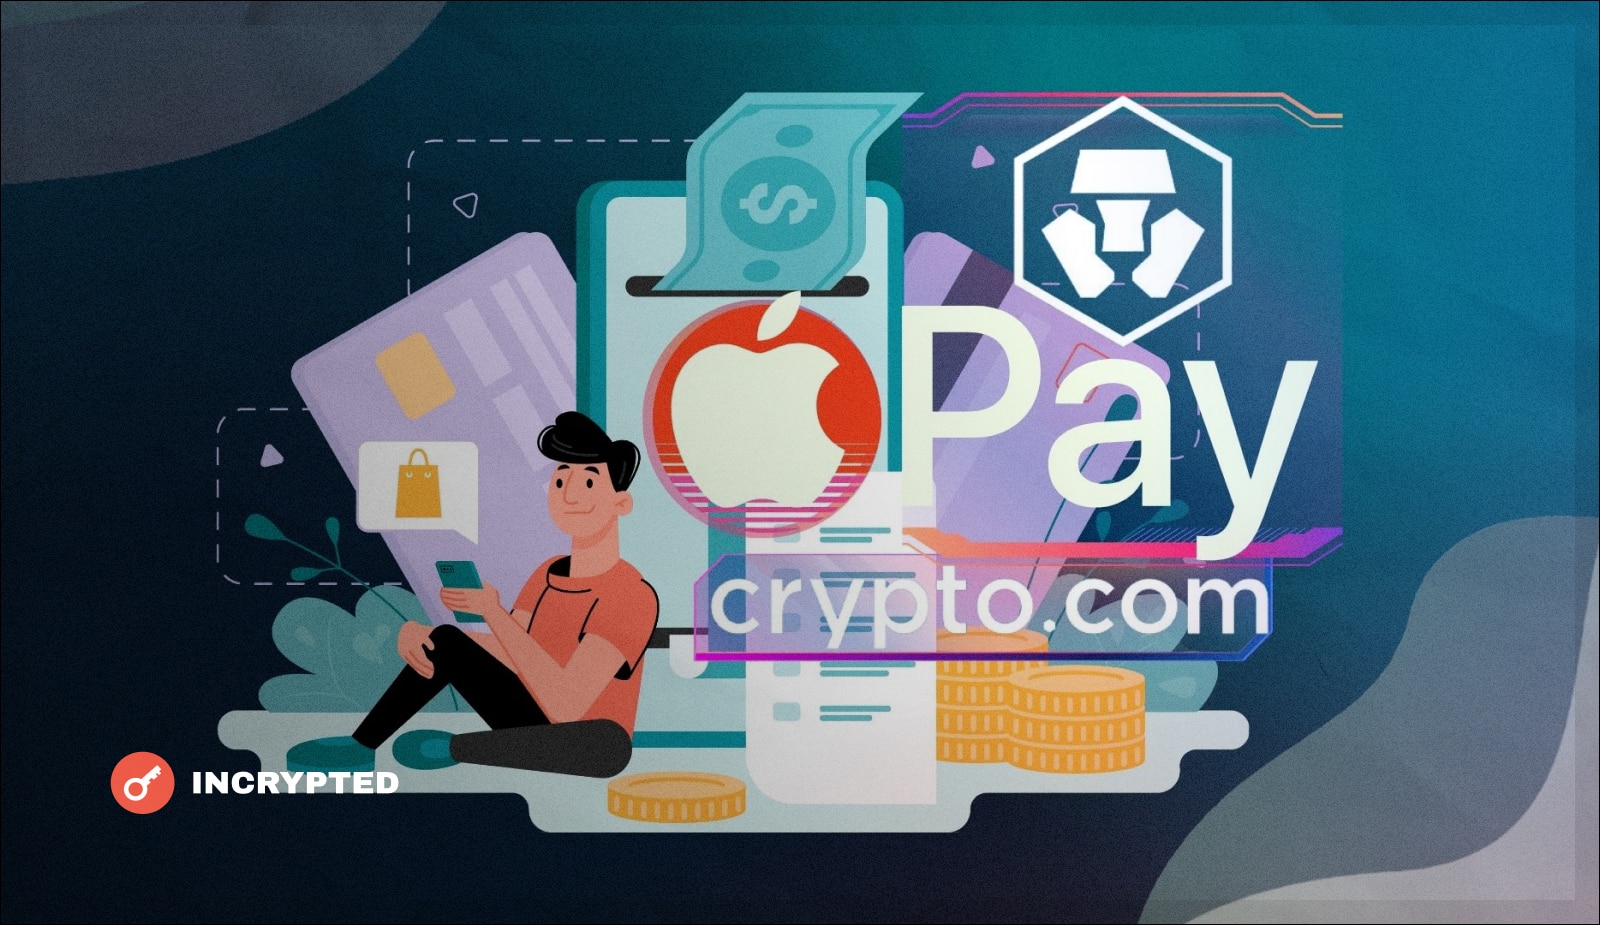 Crypto.com apple pay xry crypto wallet